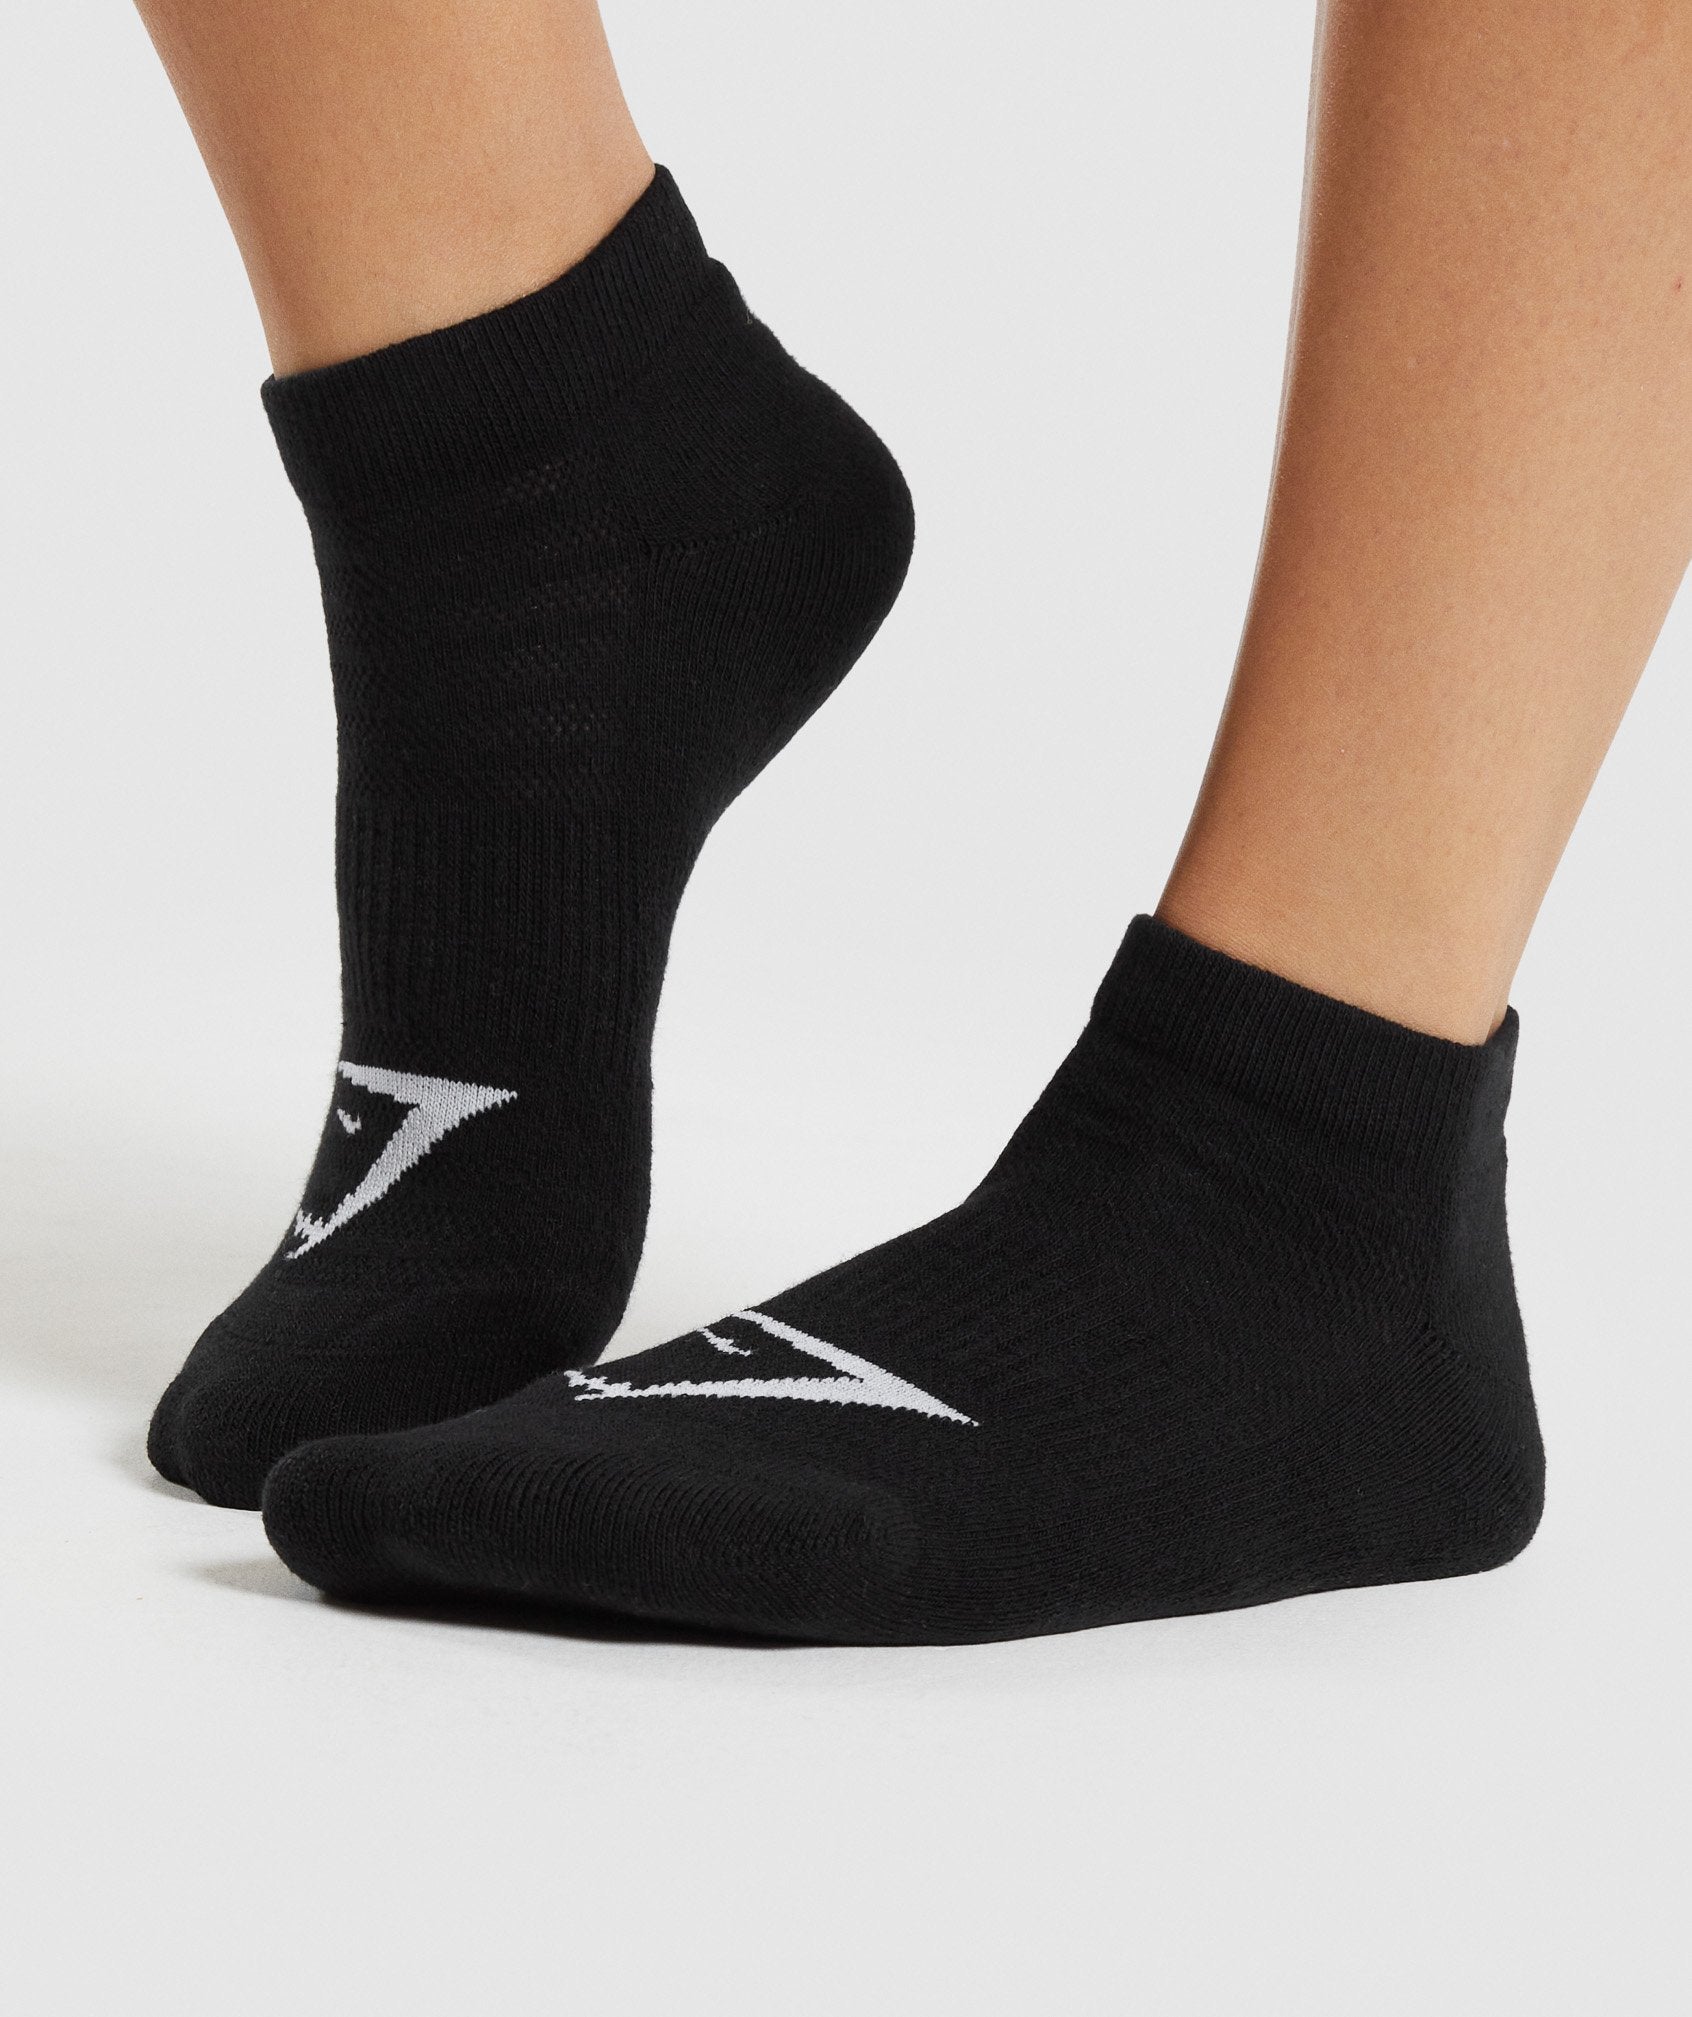 Gymshark Ankle Socks 3pk - White/Black/Light Grey Core Marl